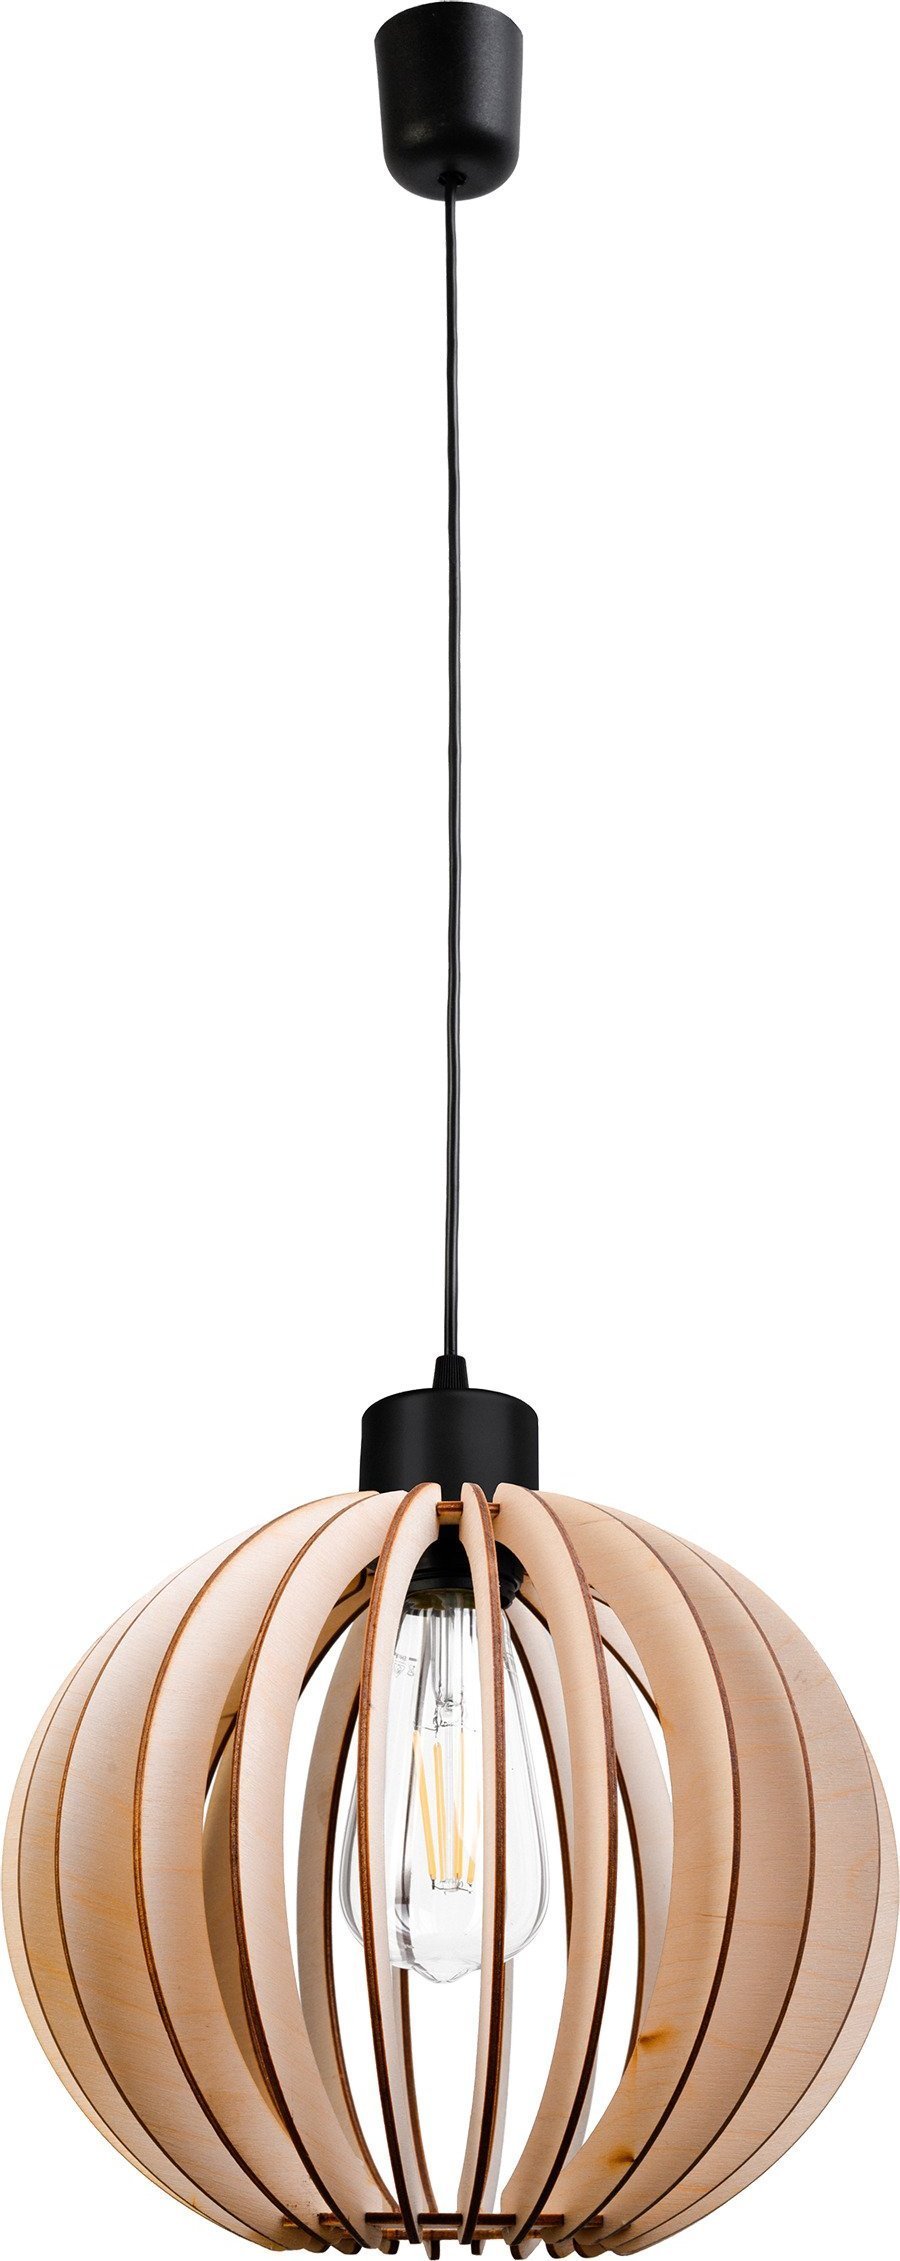 Lampa suspendata Orno PALLA 270, putere max. 1x60W, E27, negru, abajur rotund, lemn